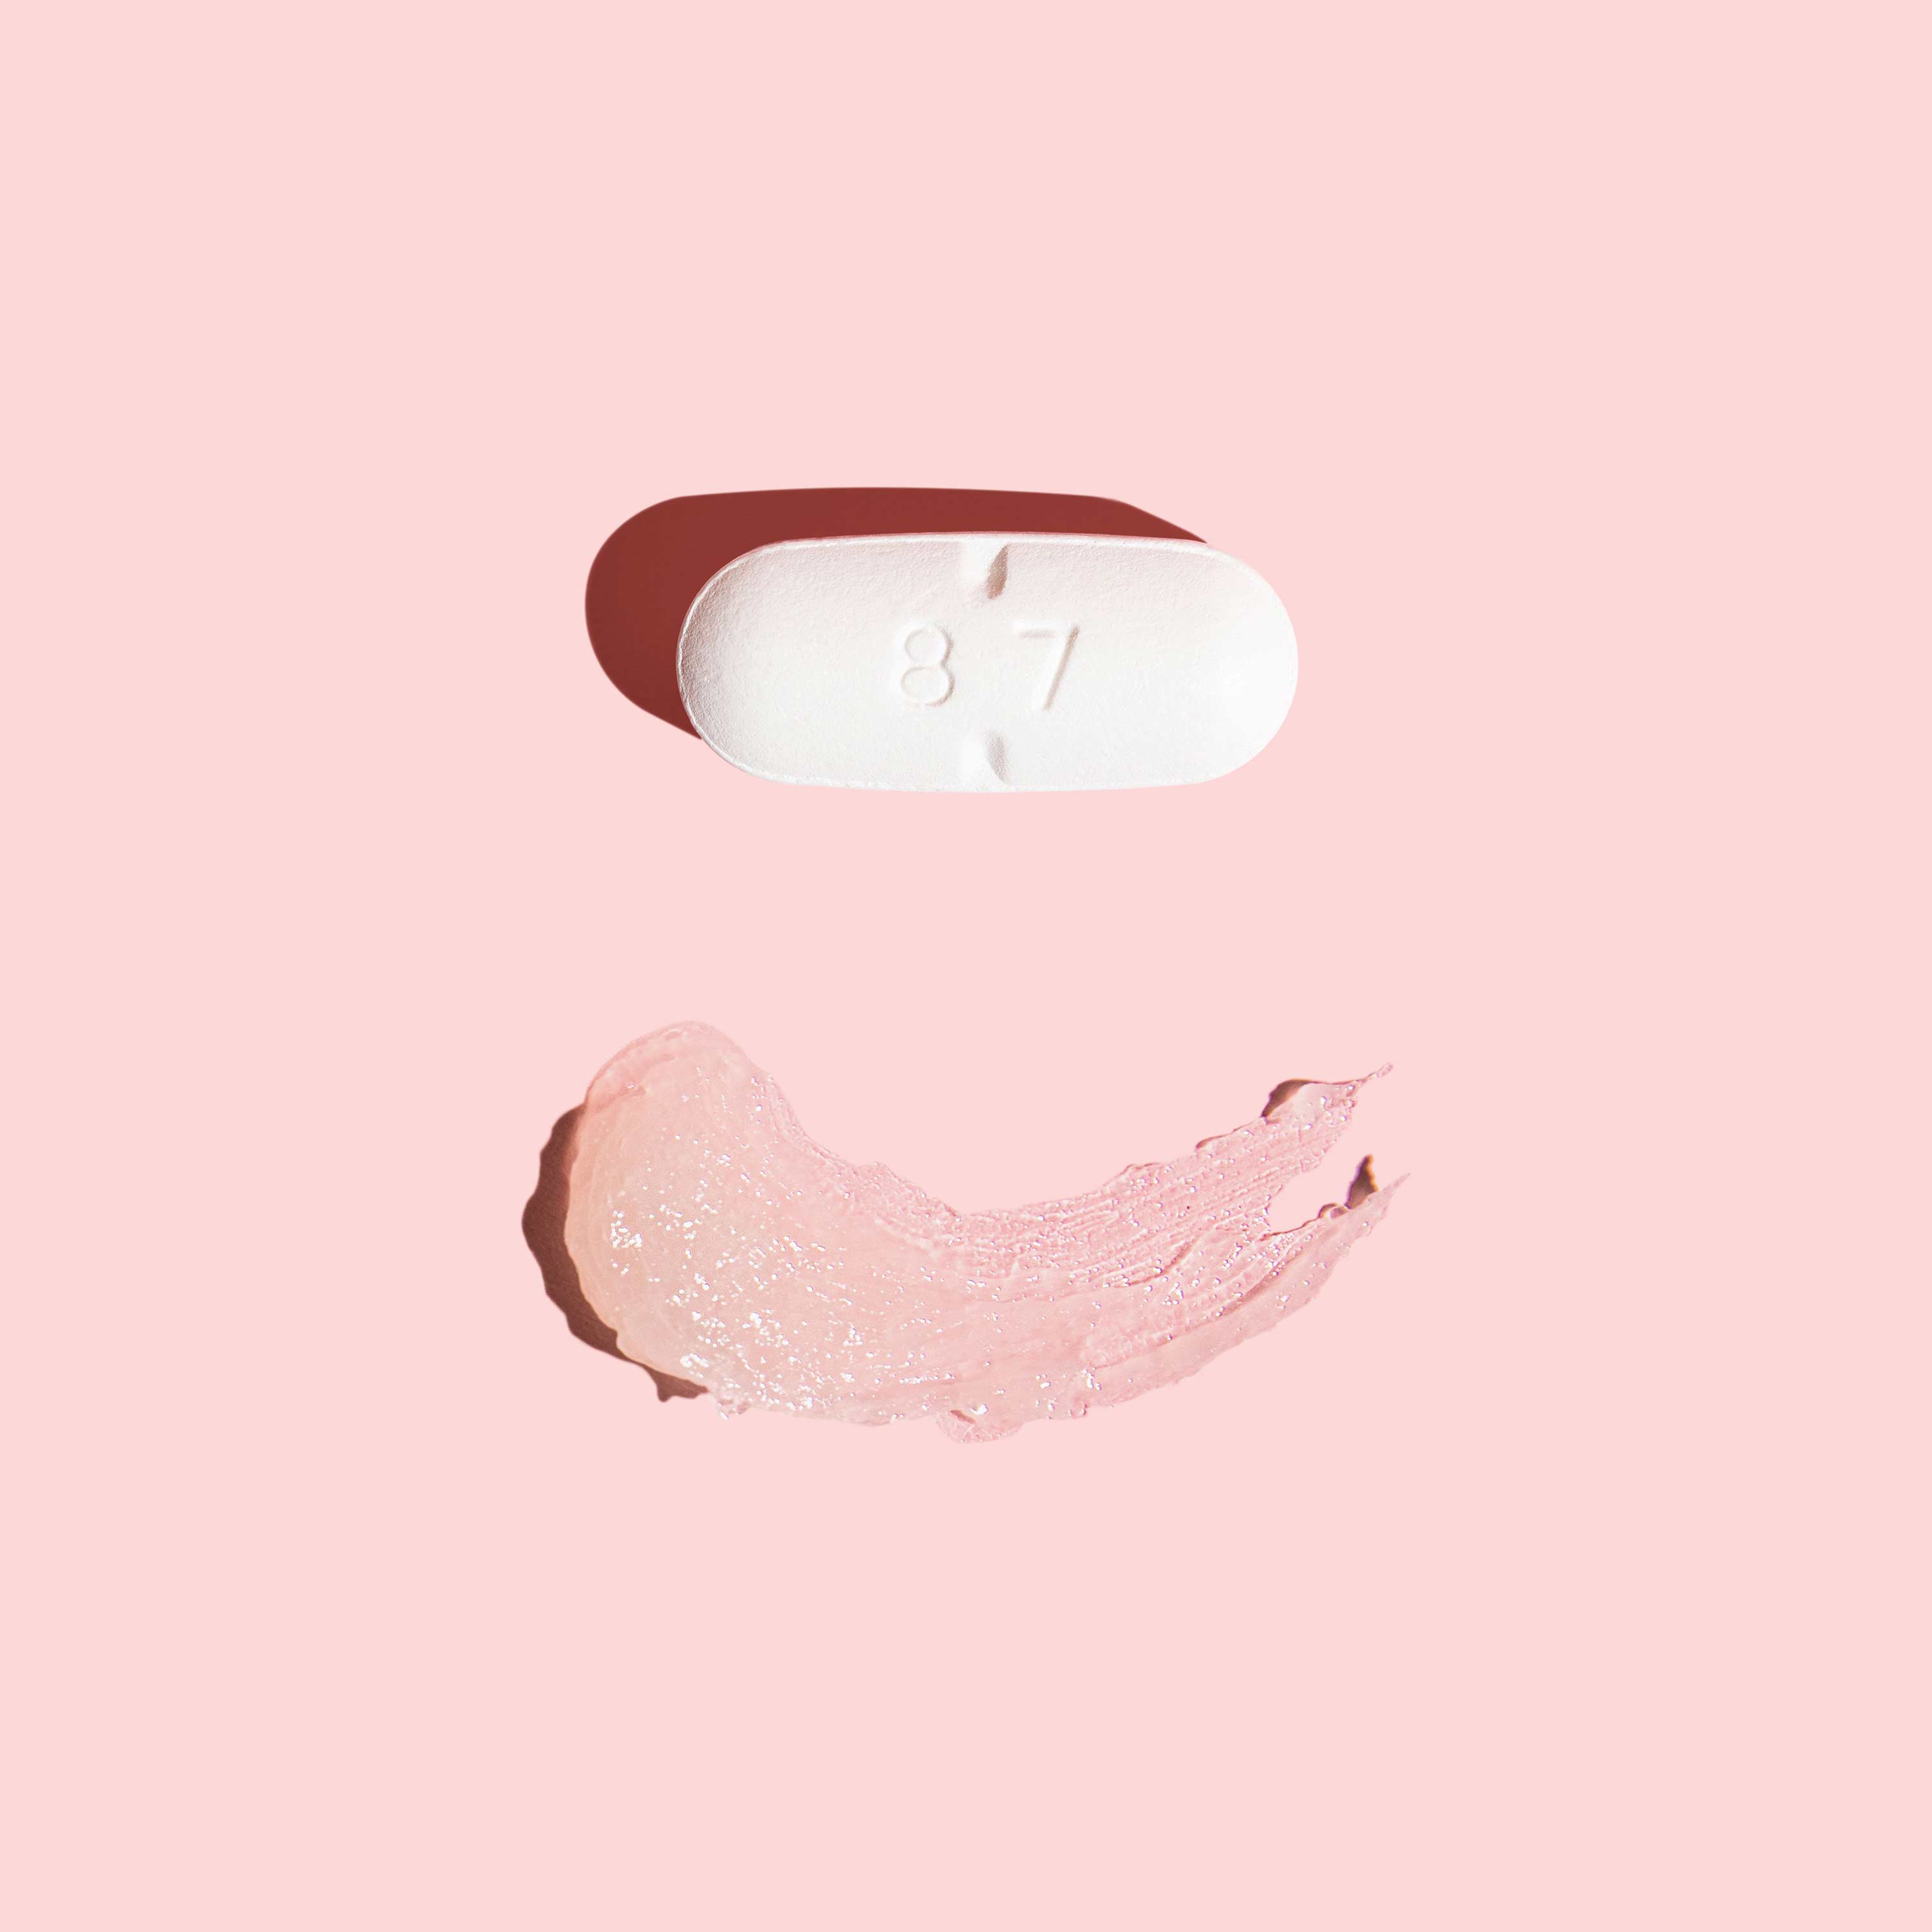 Oral acyclovir pill and smear of topical acyclovir cream on pink background